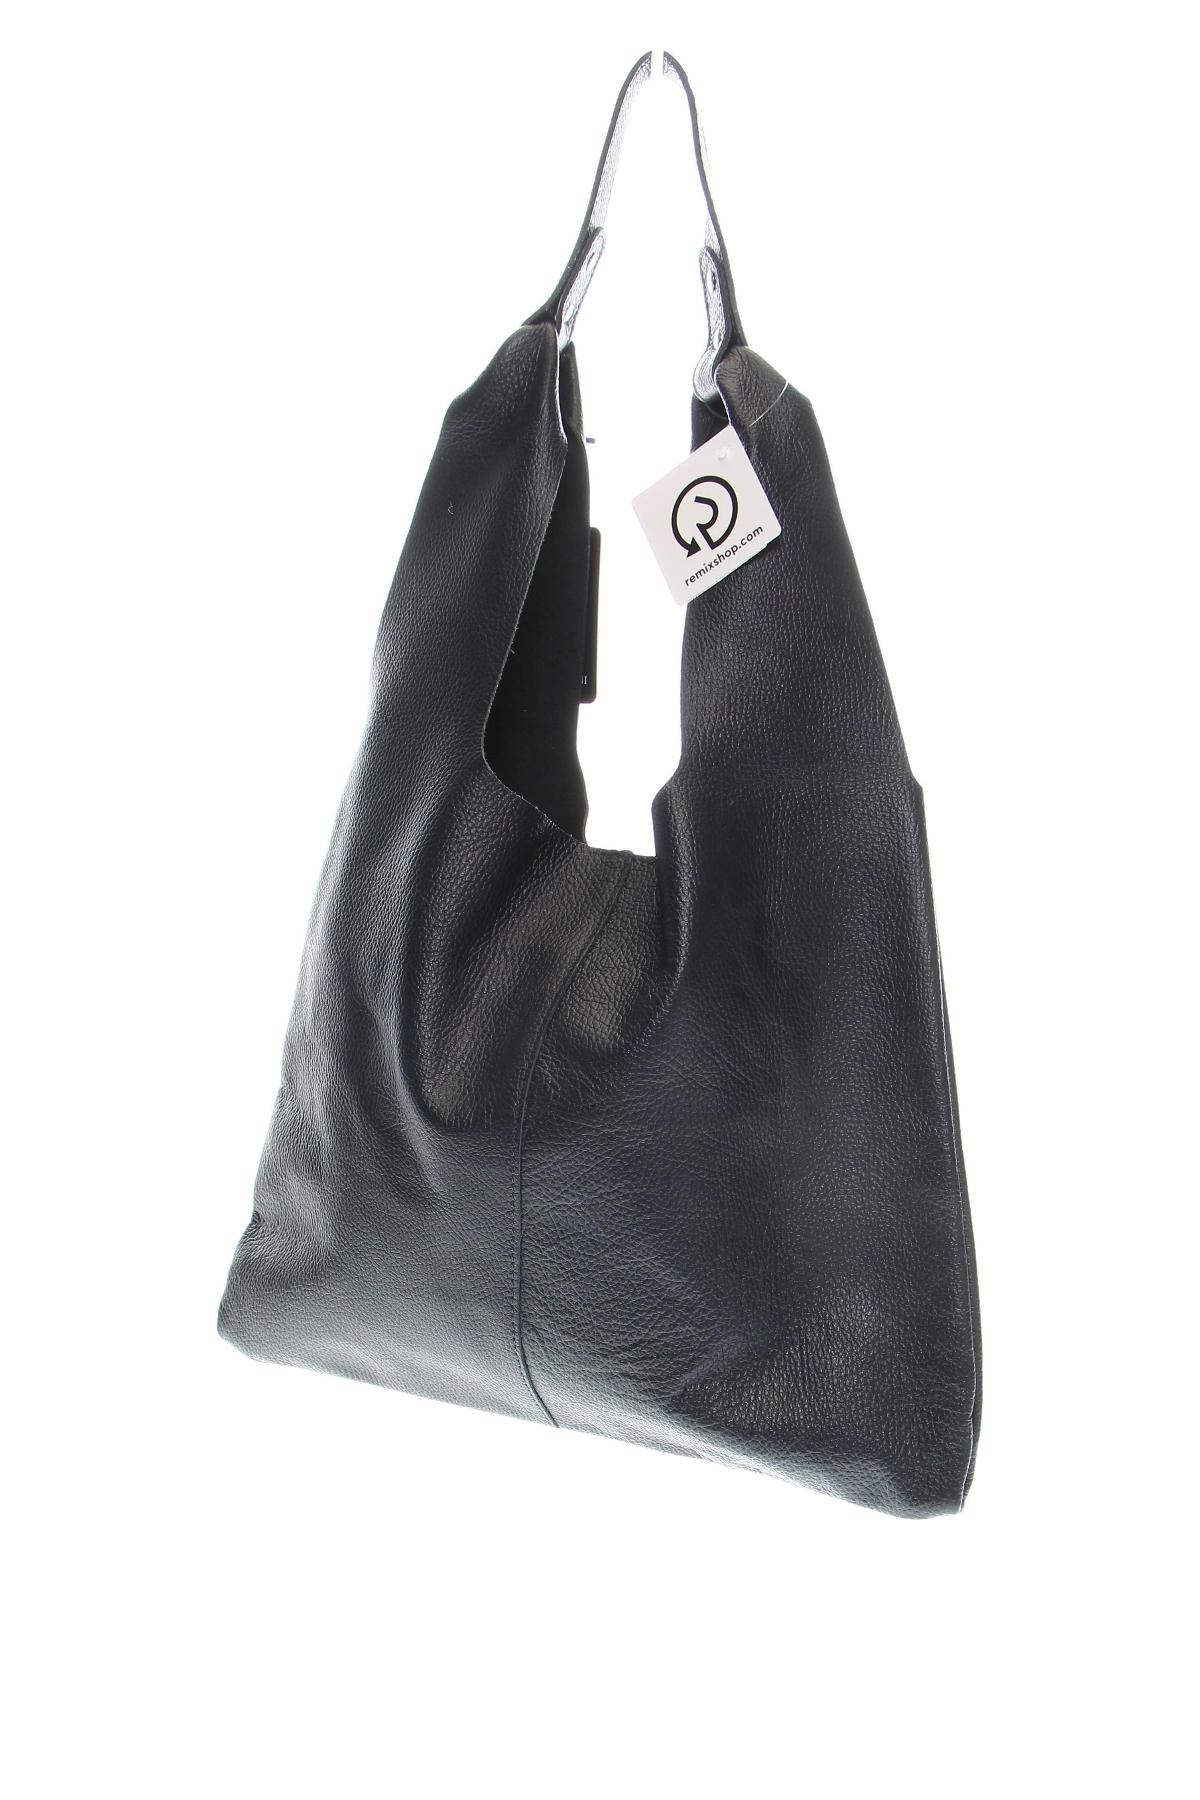 Γυναικεία τσάντα Sofia Cardoni, Χρώμα Μπλέ, Τιμή 321,13 €